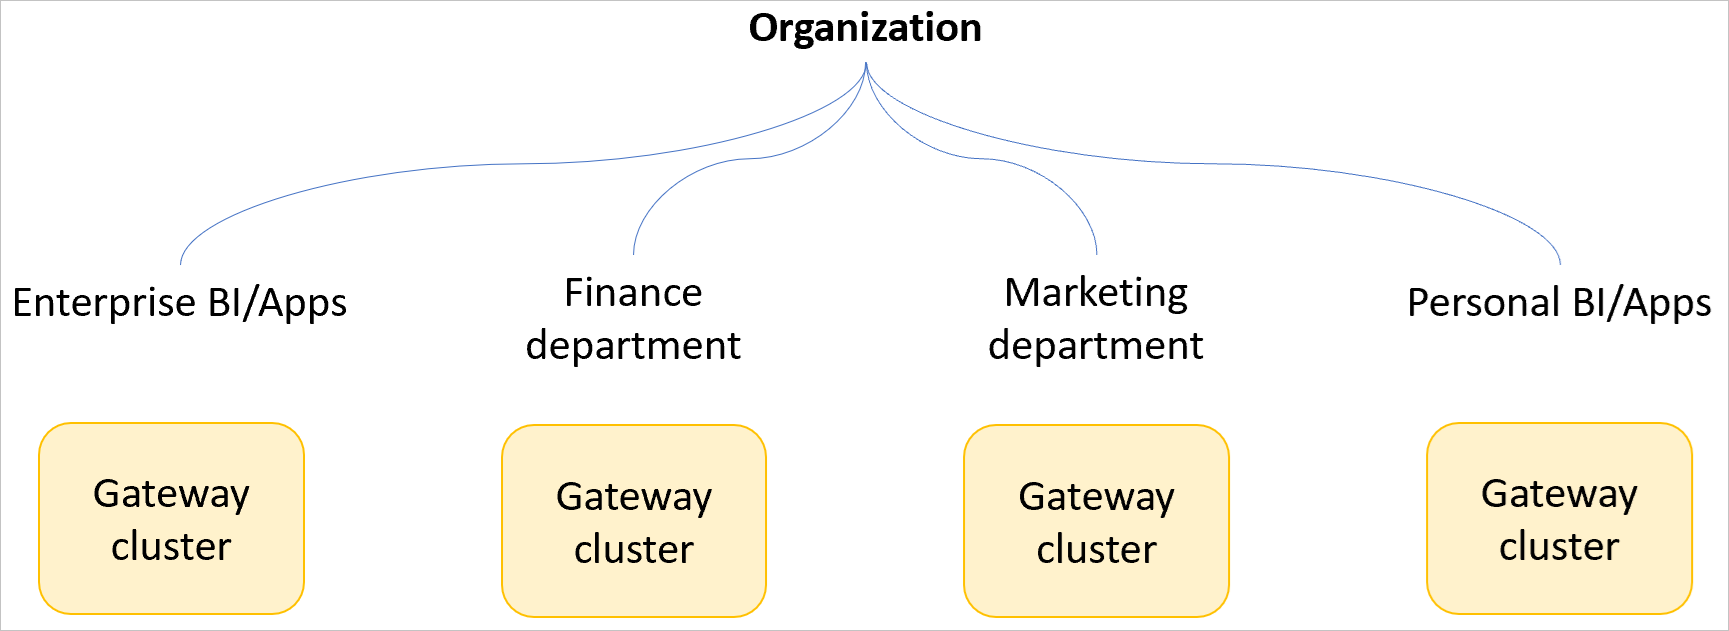 Immagine di un'organizzazione di esempio con cluster gateway separati per business intelligence aziendale e app, il reparto finanziario, il reparto marketing e le app e business intelligence personali.